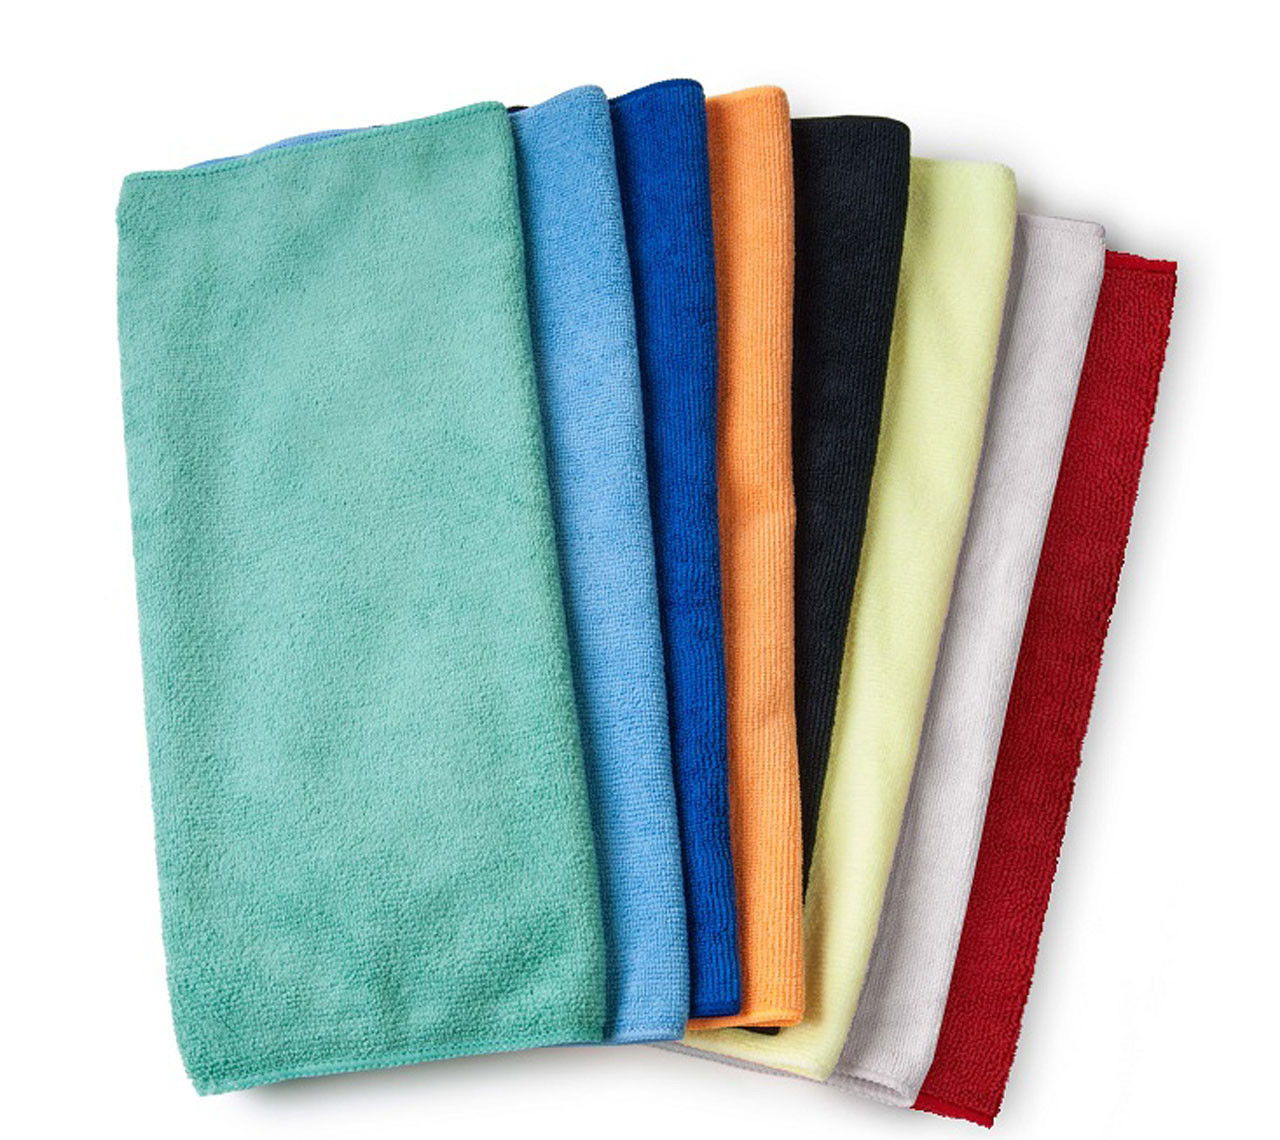 Do bulk golf towels absorb dirt and moisture well?